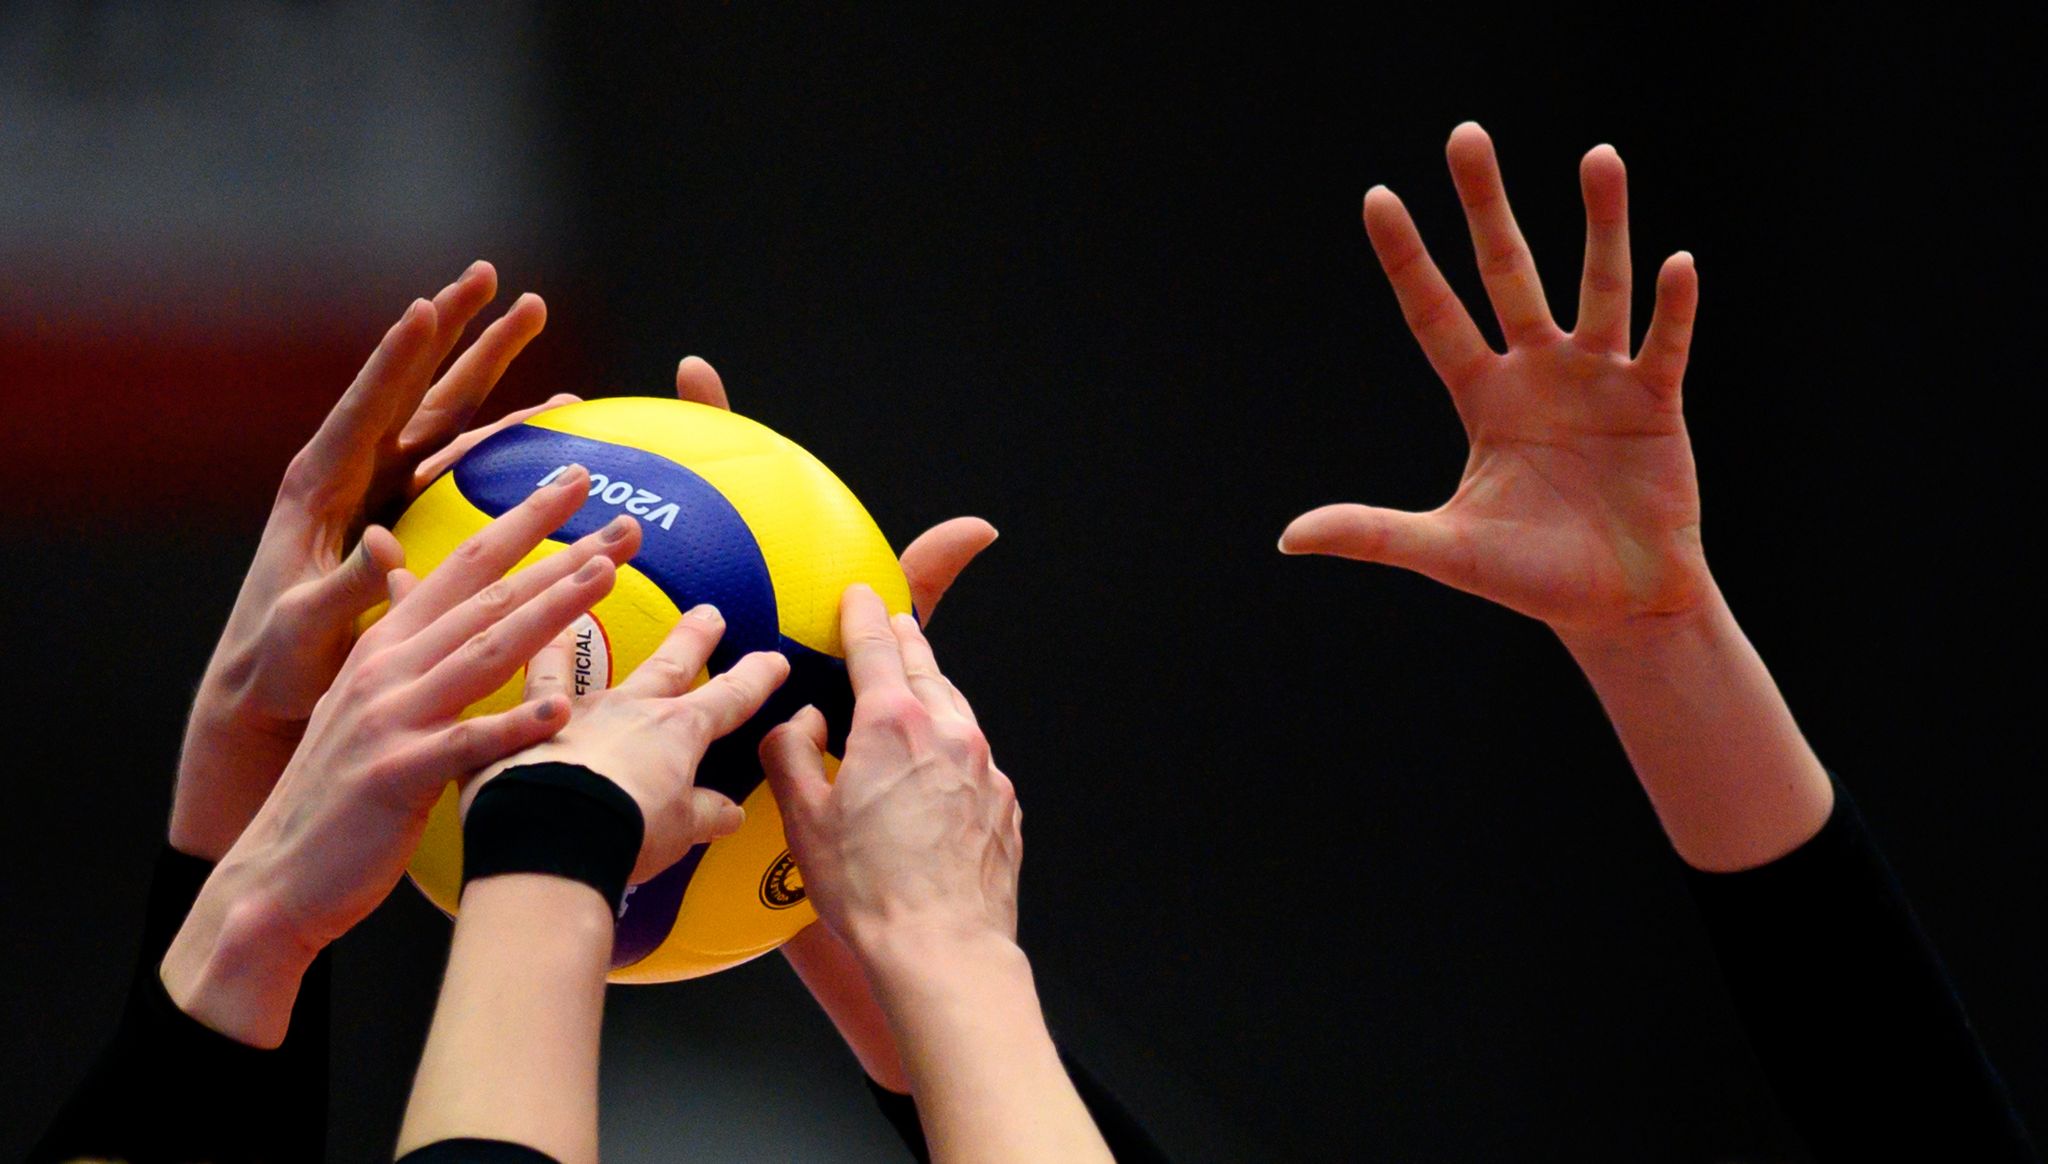 Vie Volleyball-WM der Männer hätte vom 26. August bis 11. September in Russland stattfinden sollen.